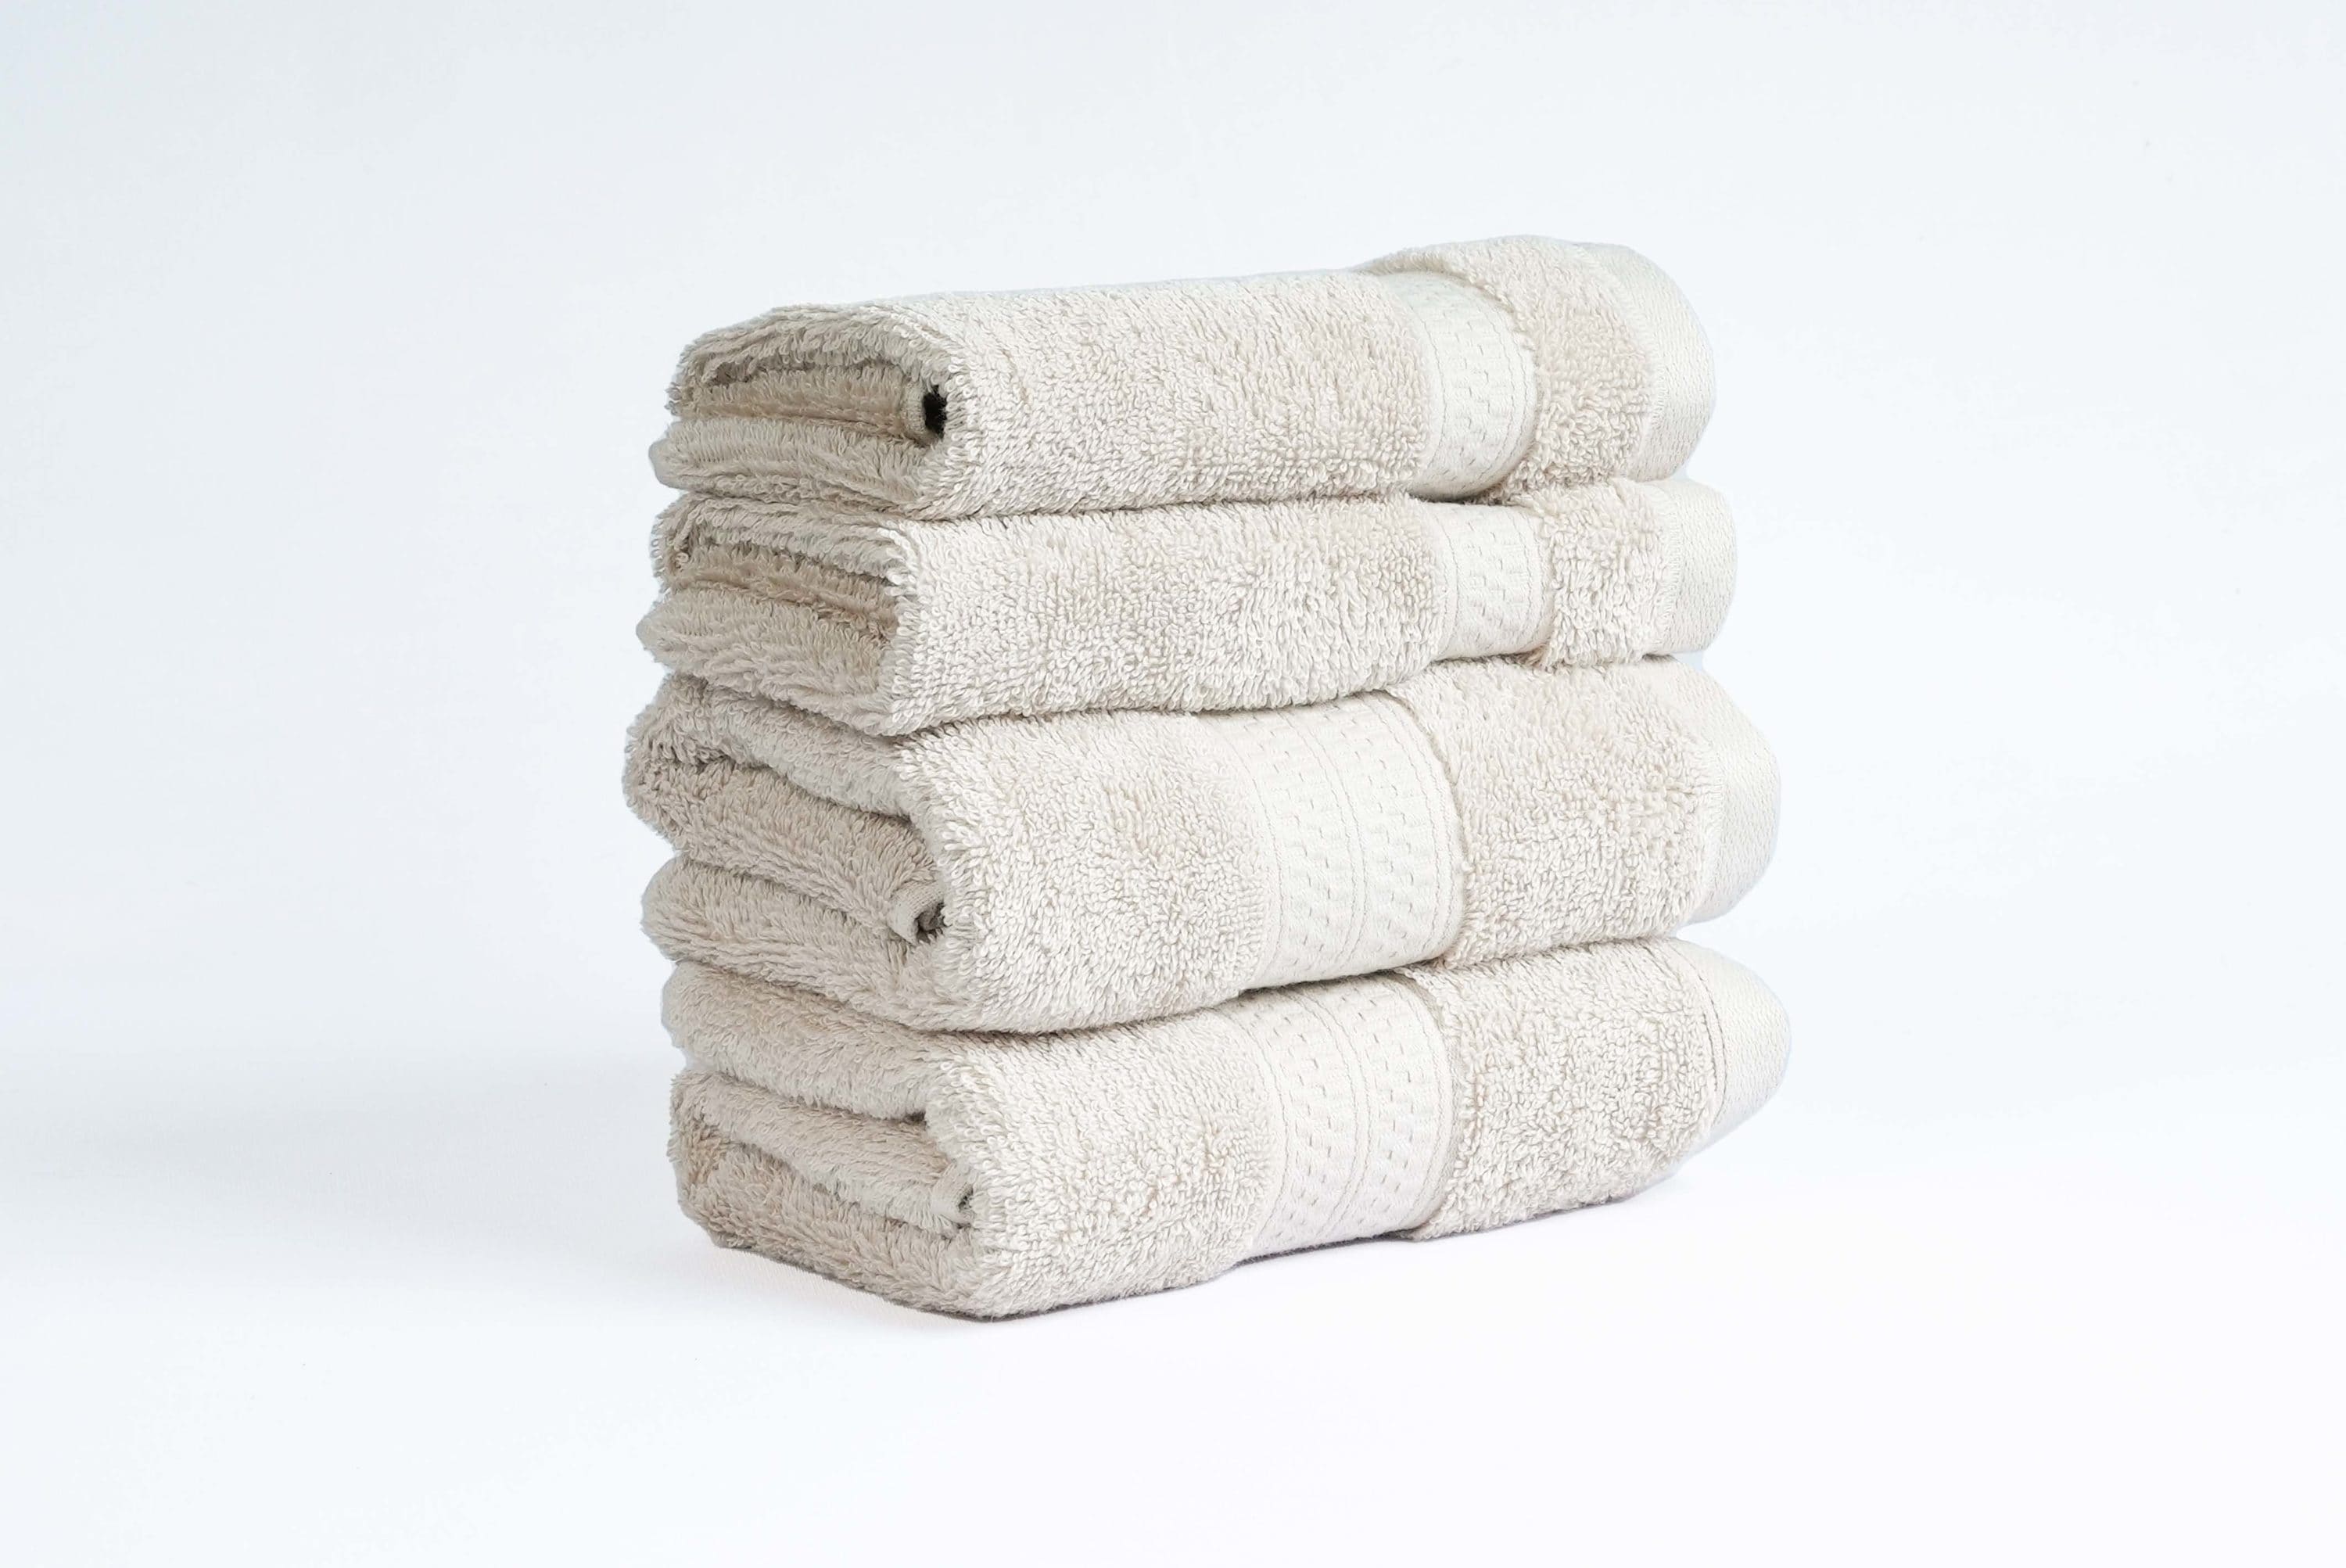 Allen + Roth Cotton Bath Towel Set - White - 4 Pieces